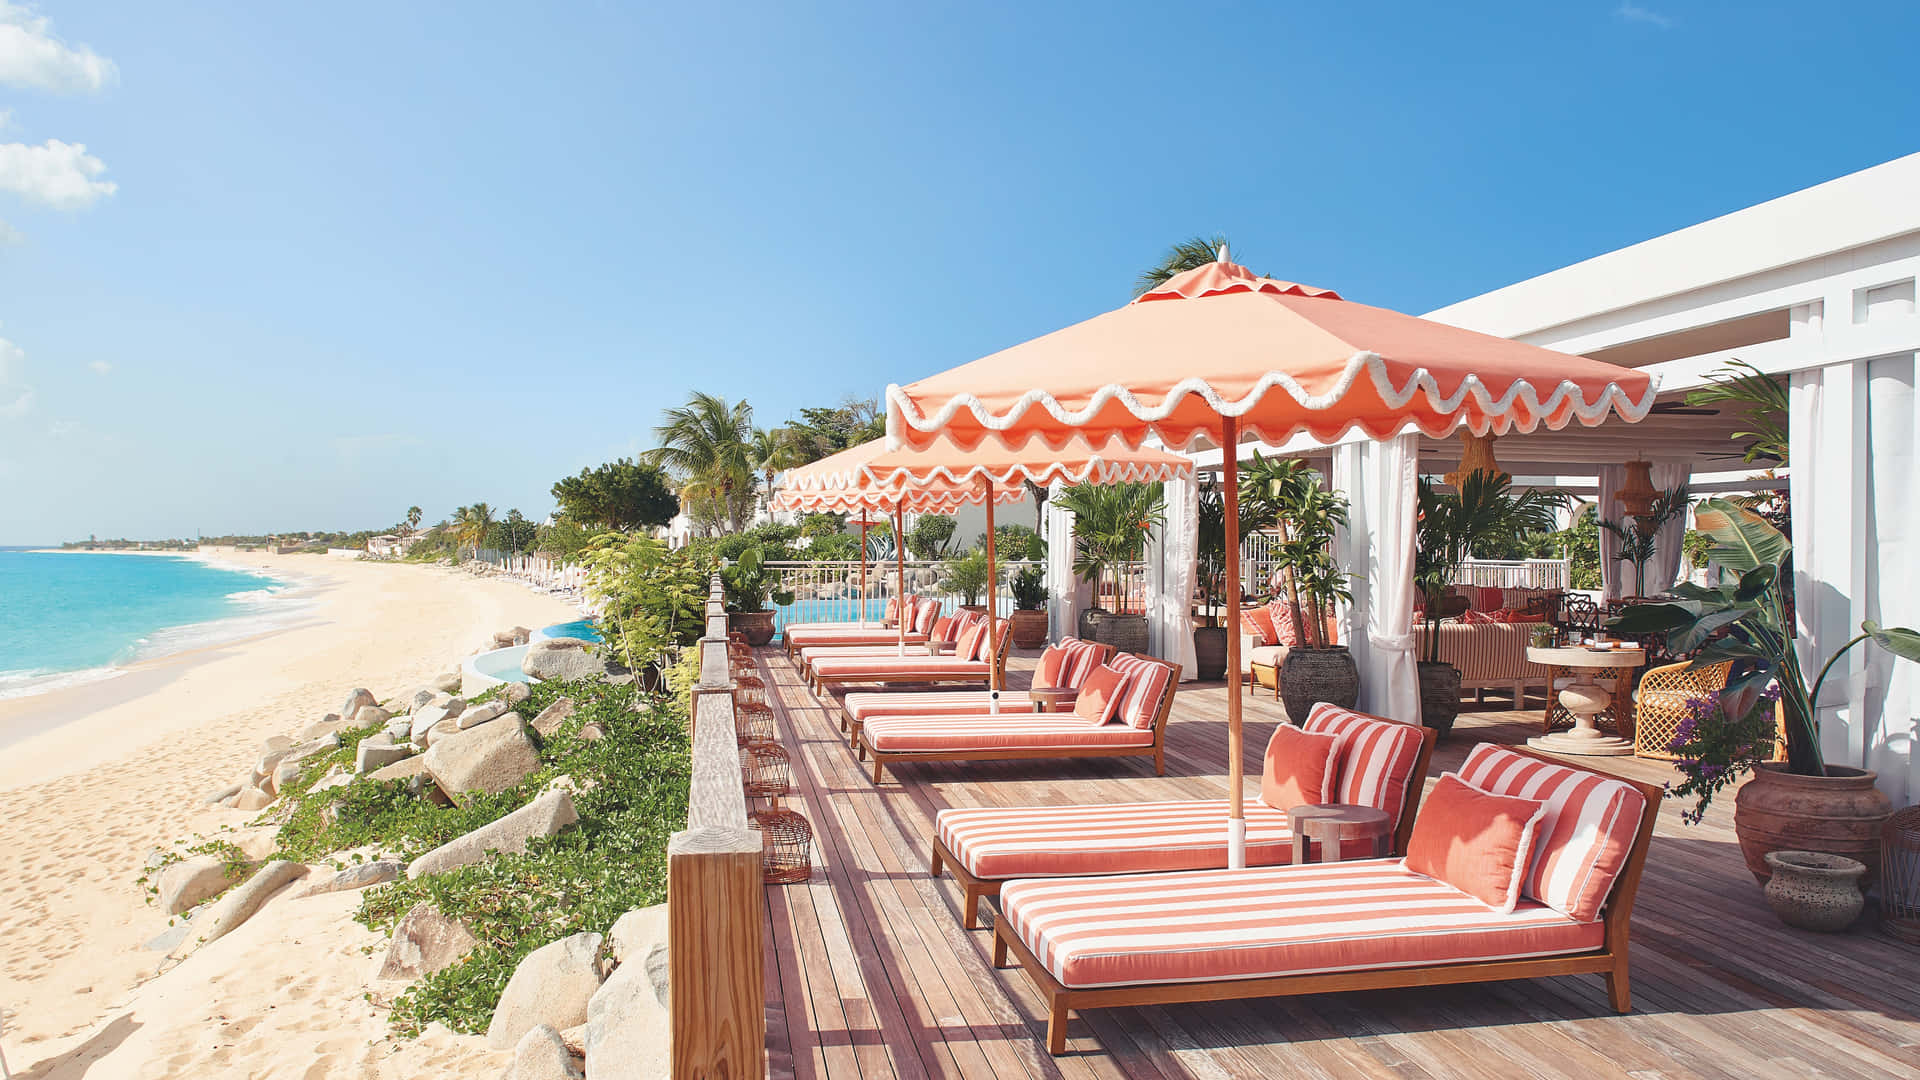 A Luxurious Beach Resort At Sunset Wallpaper